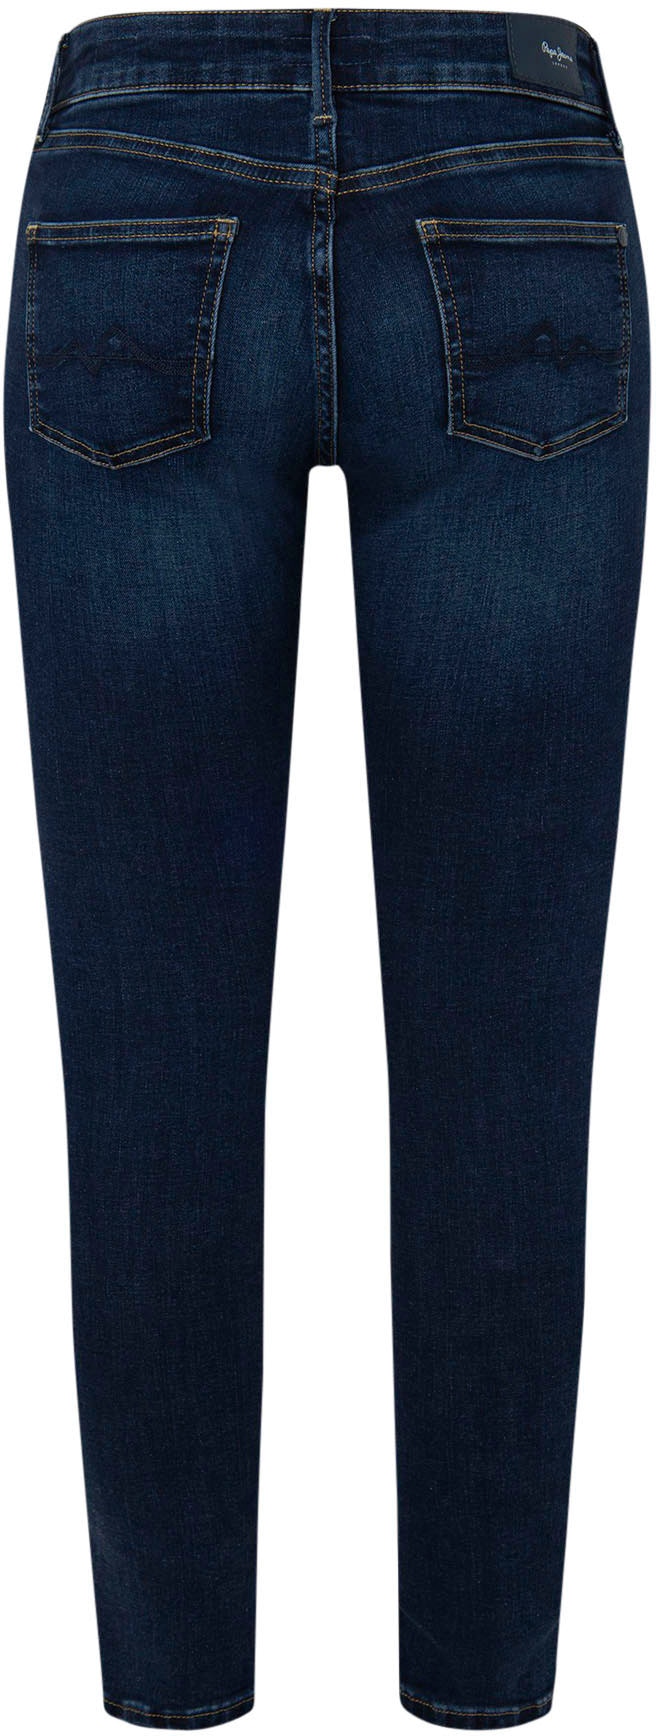 Pepe Jeans Skinny-fit-Jeans »PIXIE« bestellen